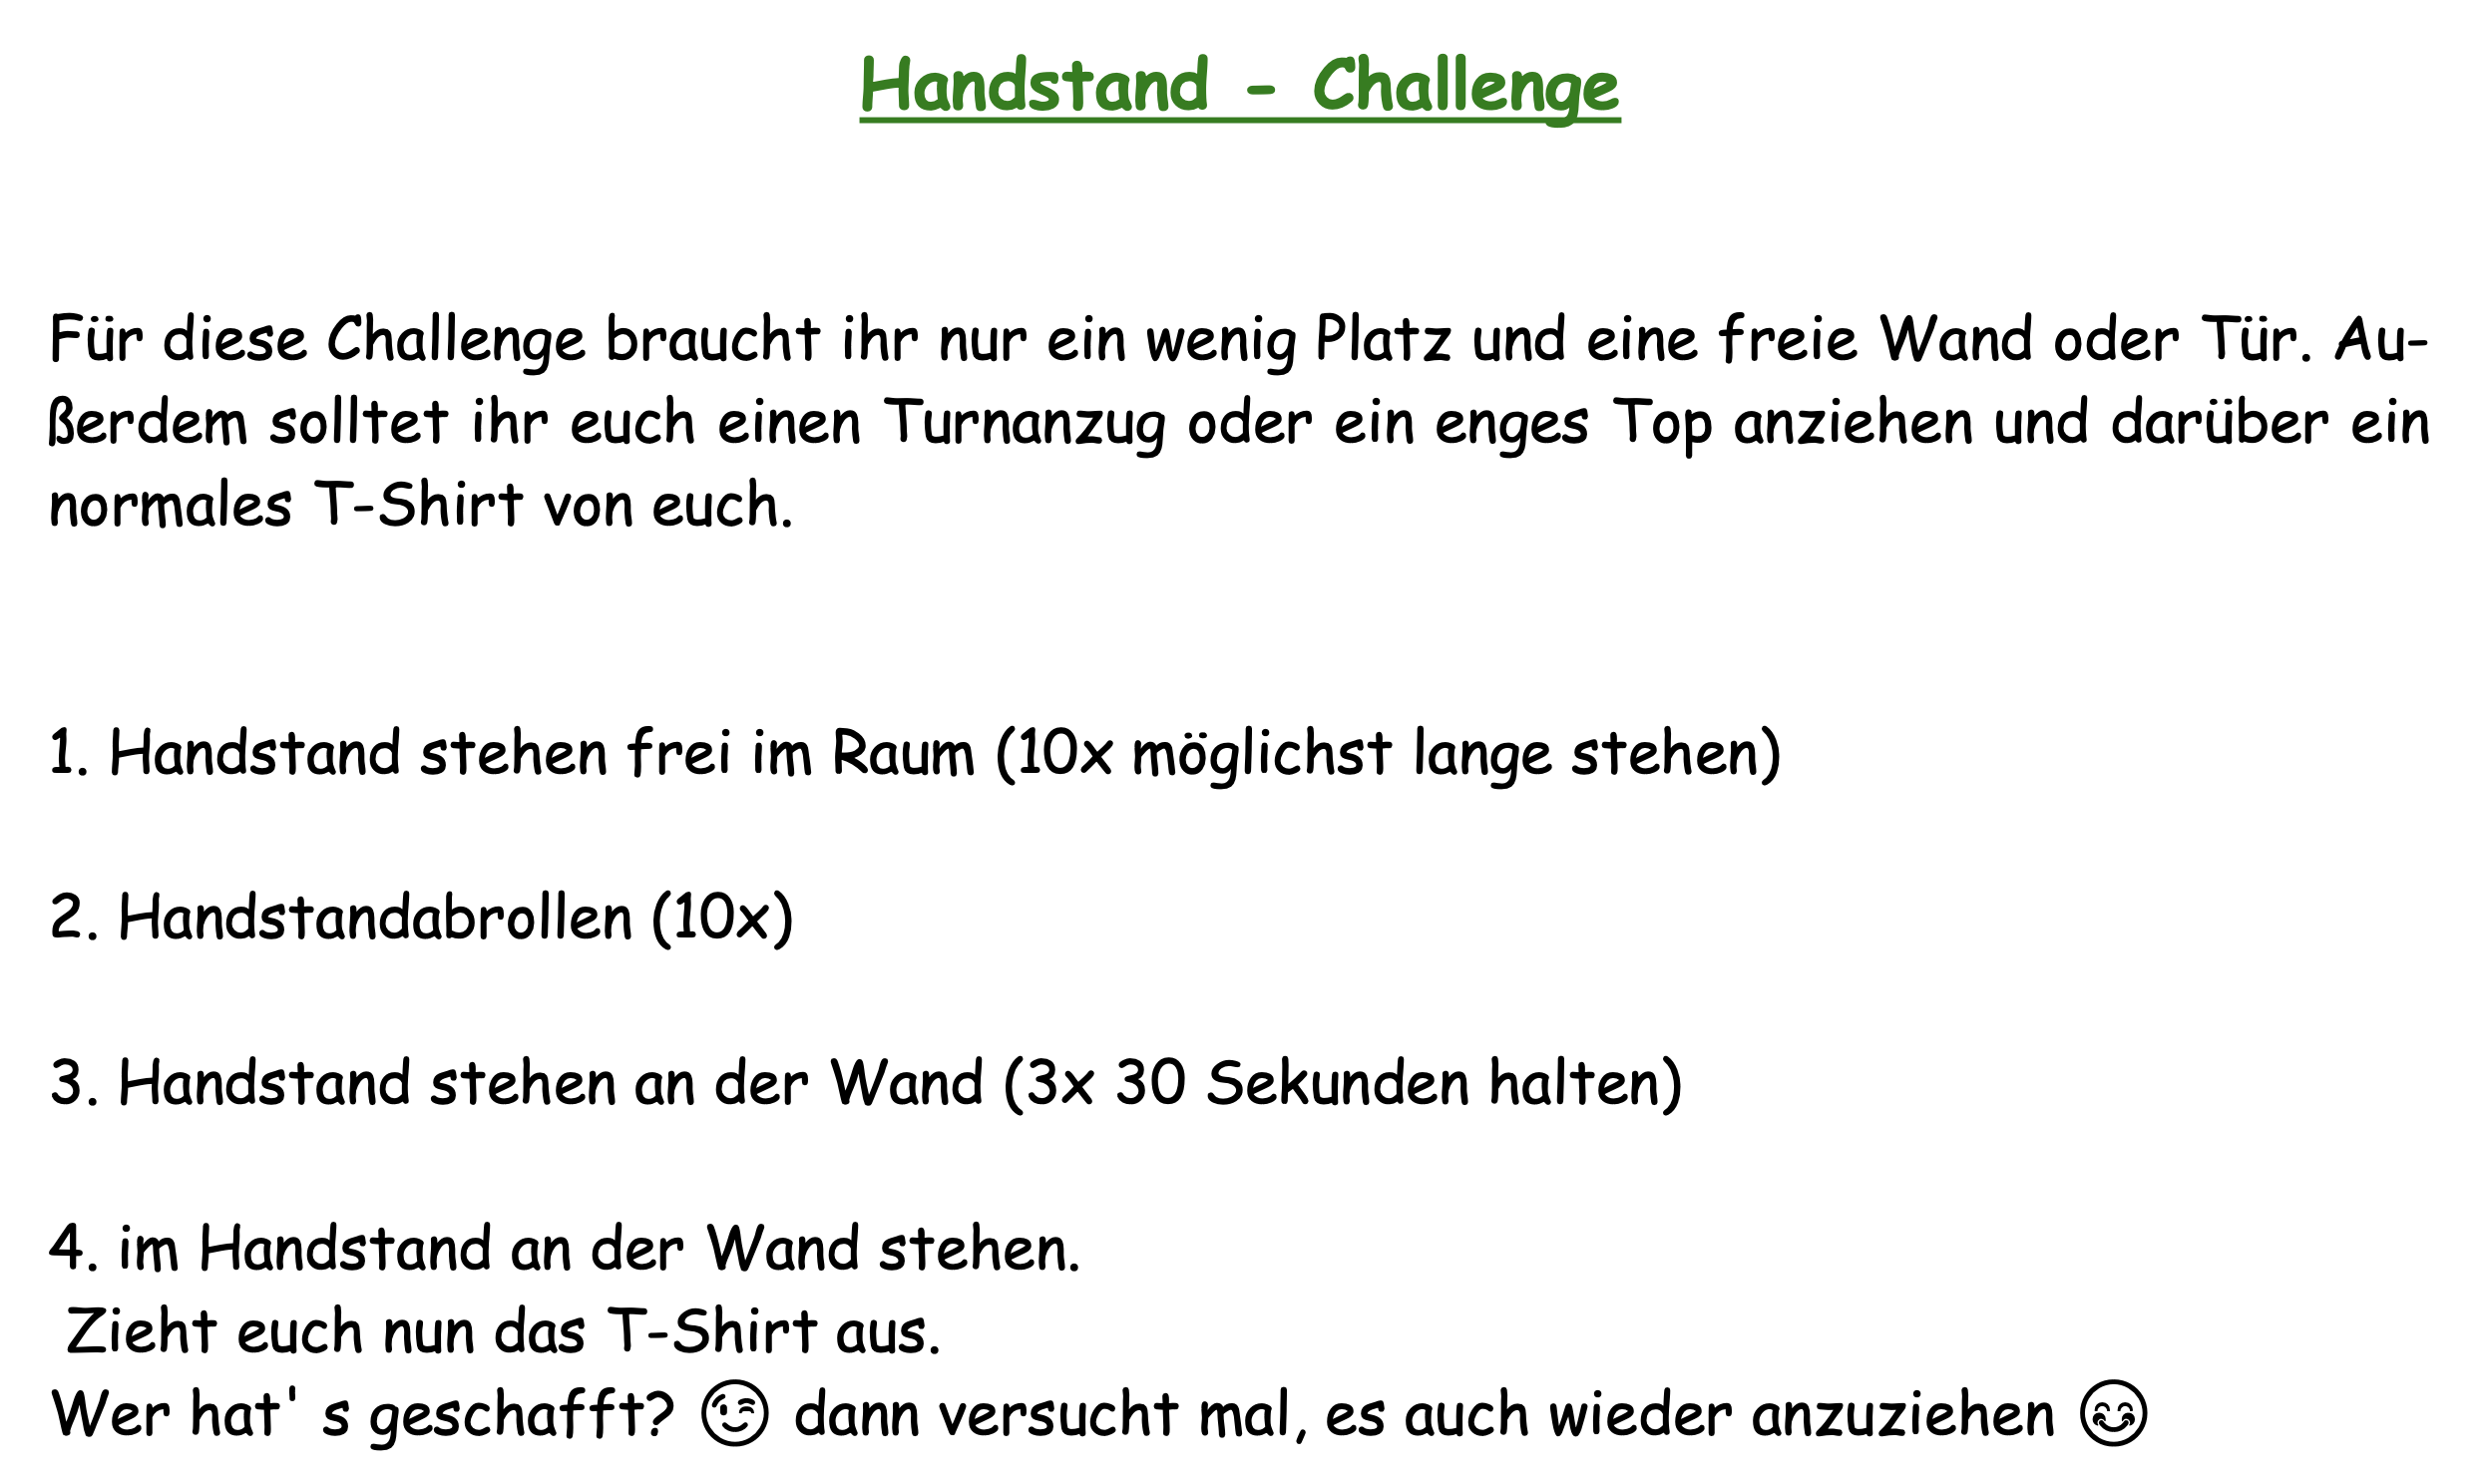 Handstand Challenge